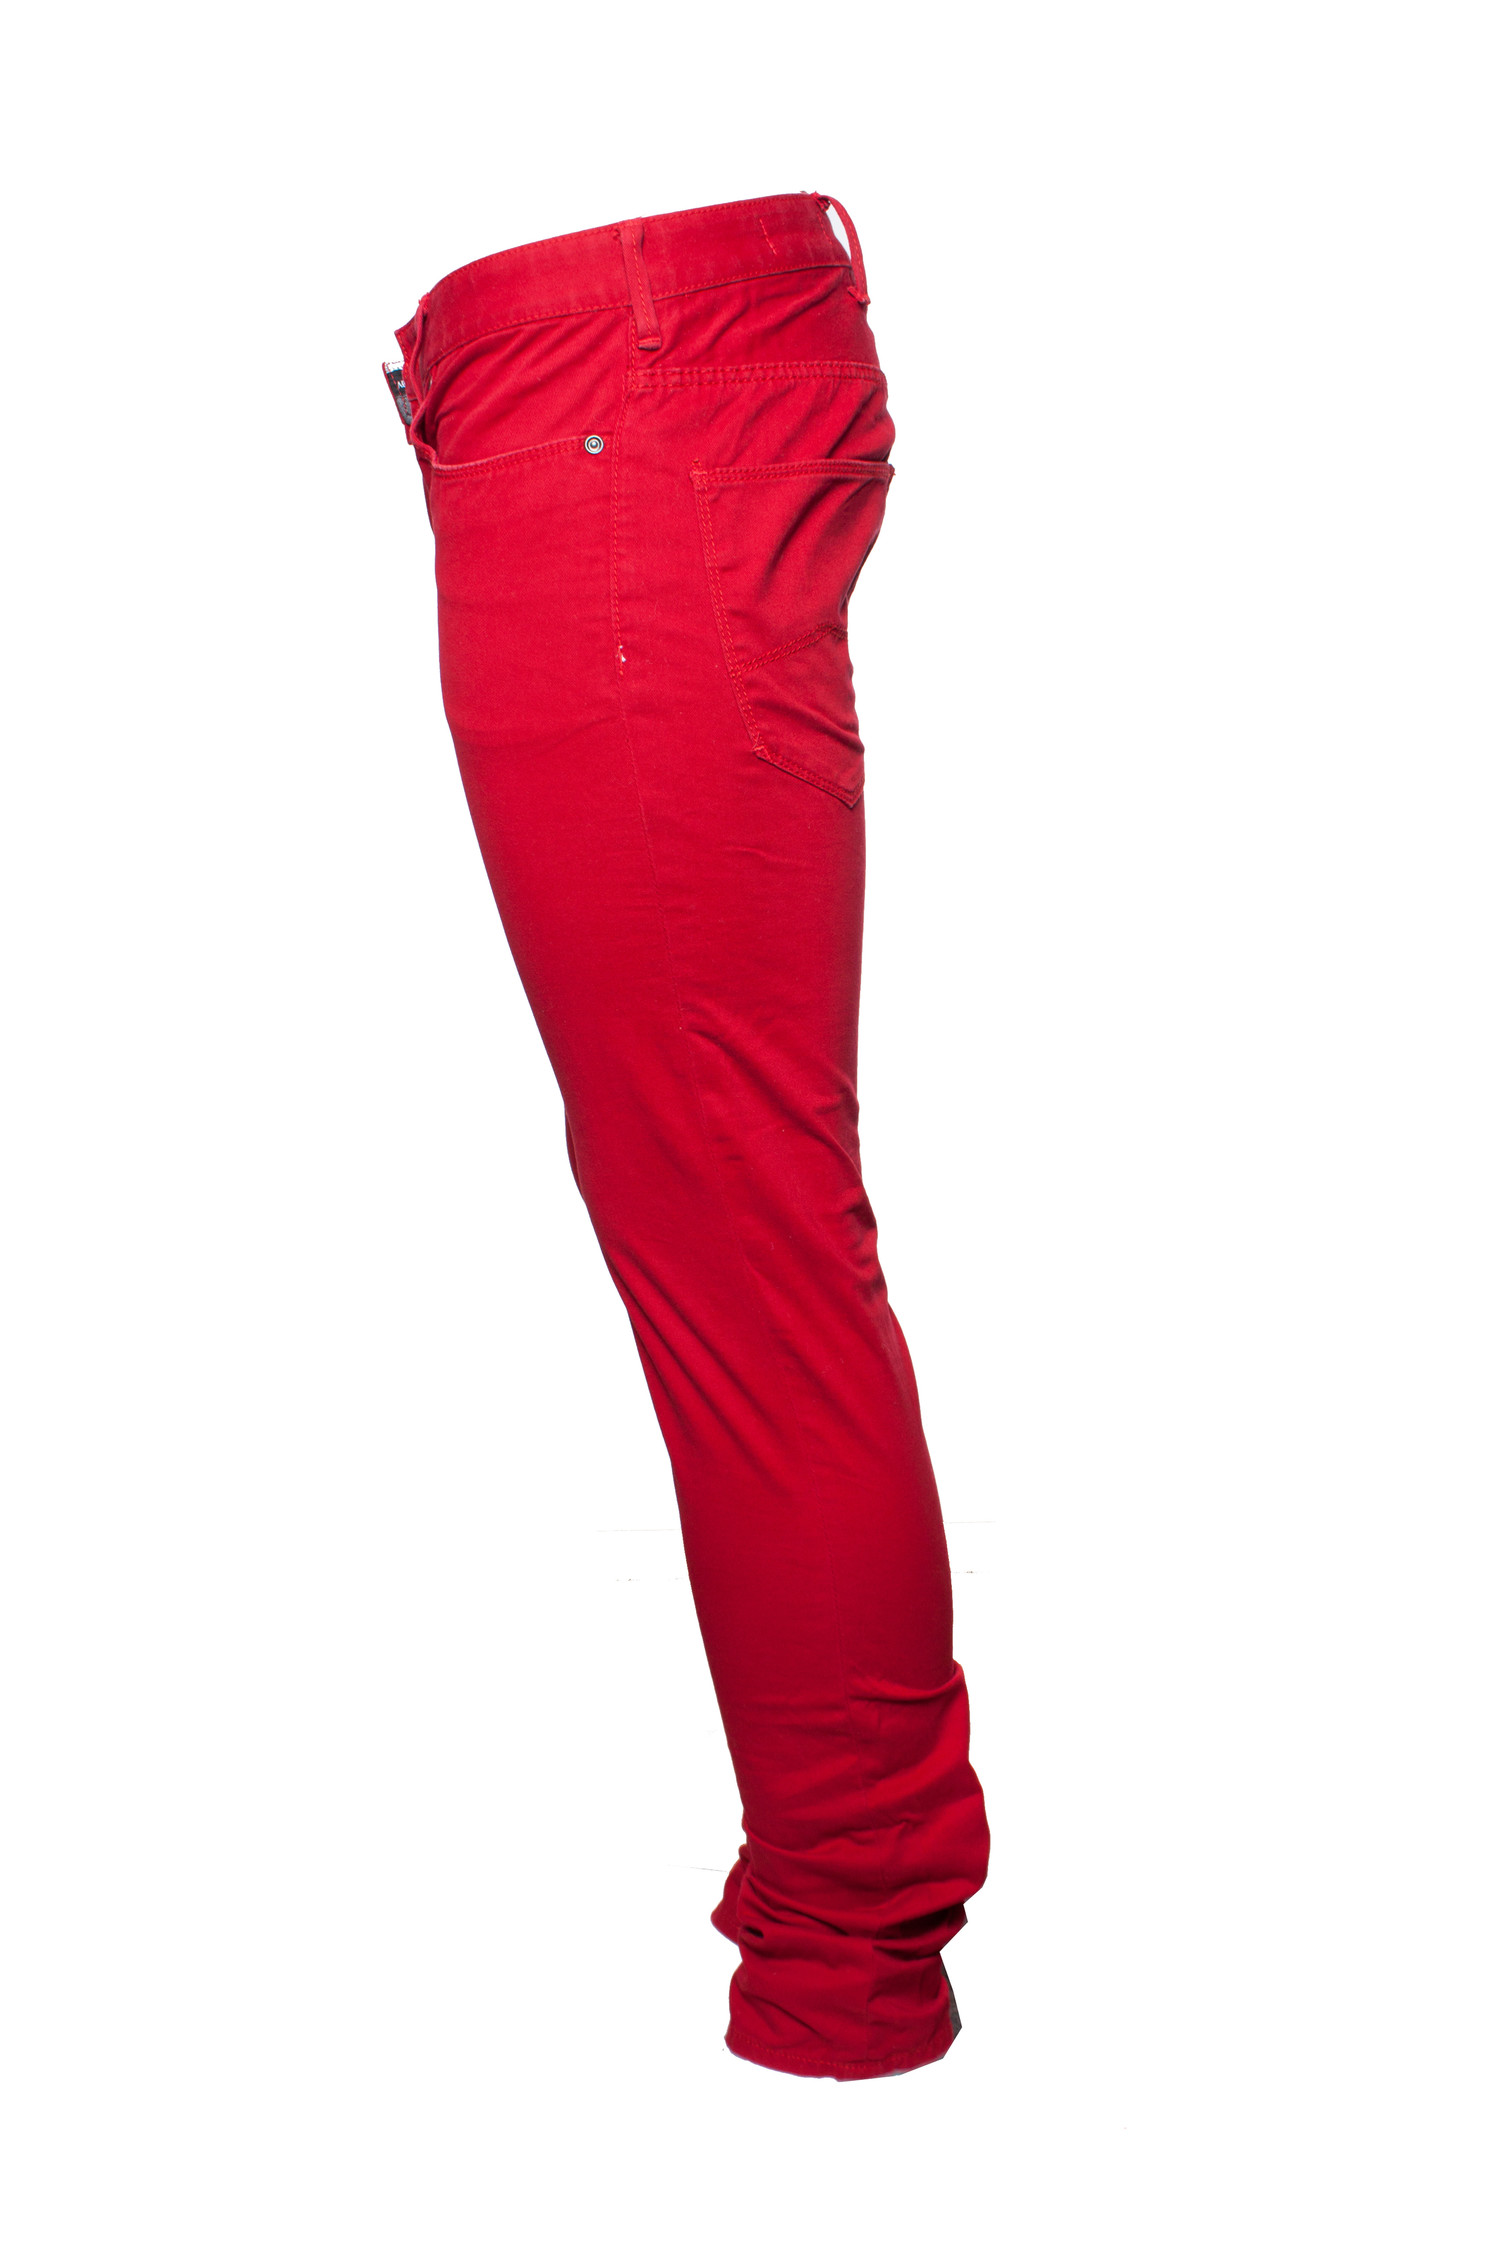 Armani Jeans, Rode spijkerbroek in maat W29/S. Unique Pieces